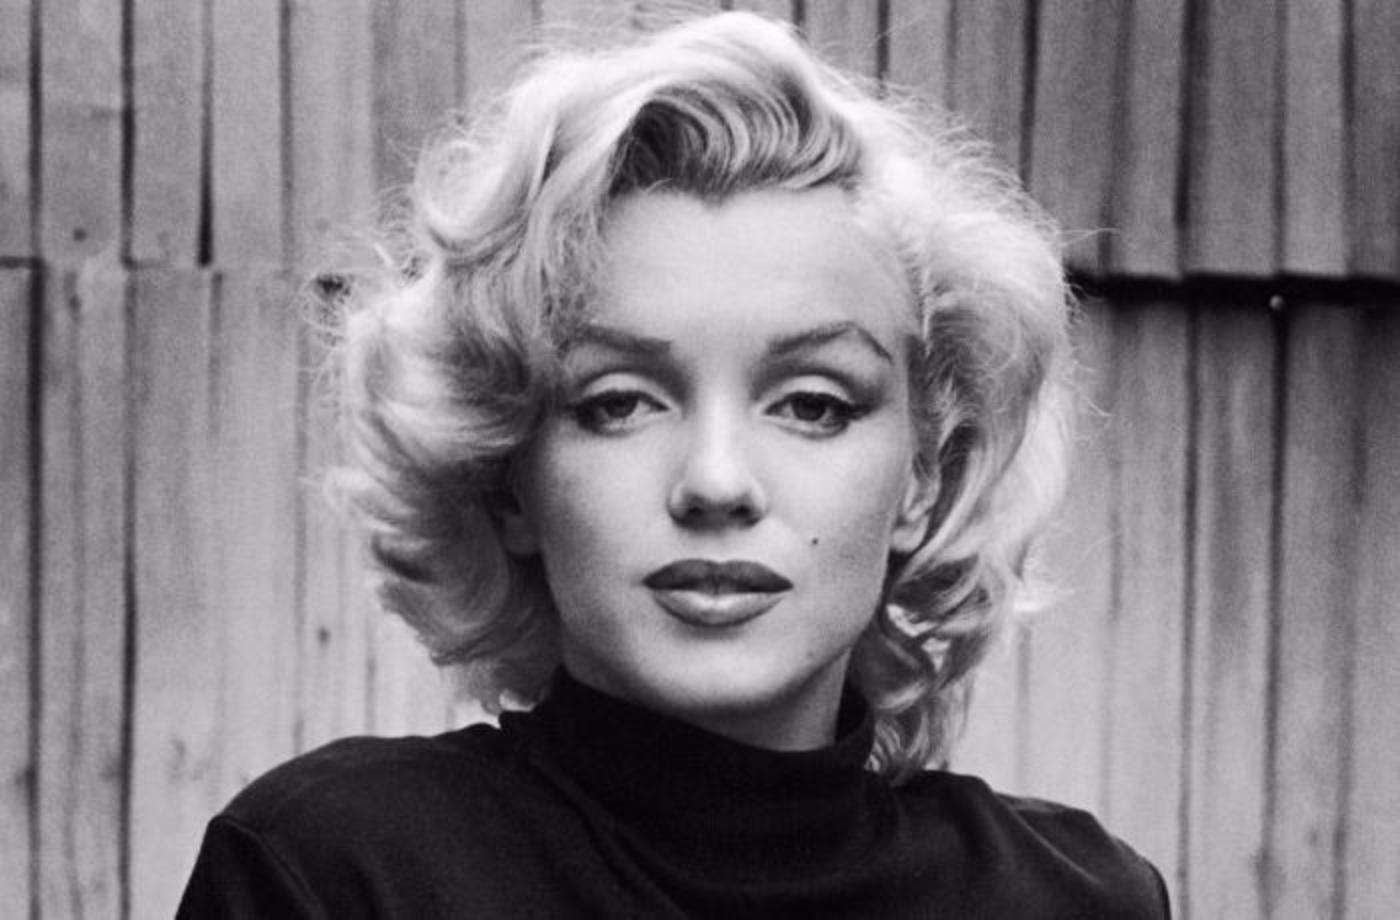 Nikdo od ní nic nečekal a přesto se stala ikonou. Proč milujeme Marilyn  Monroe? - Doporučujeme - ŽENY s.r.o.